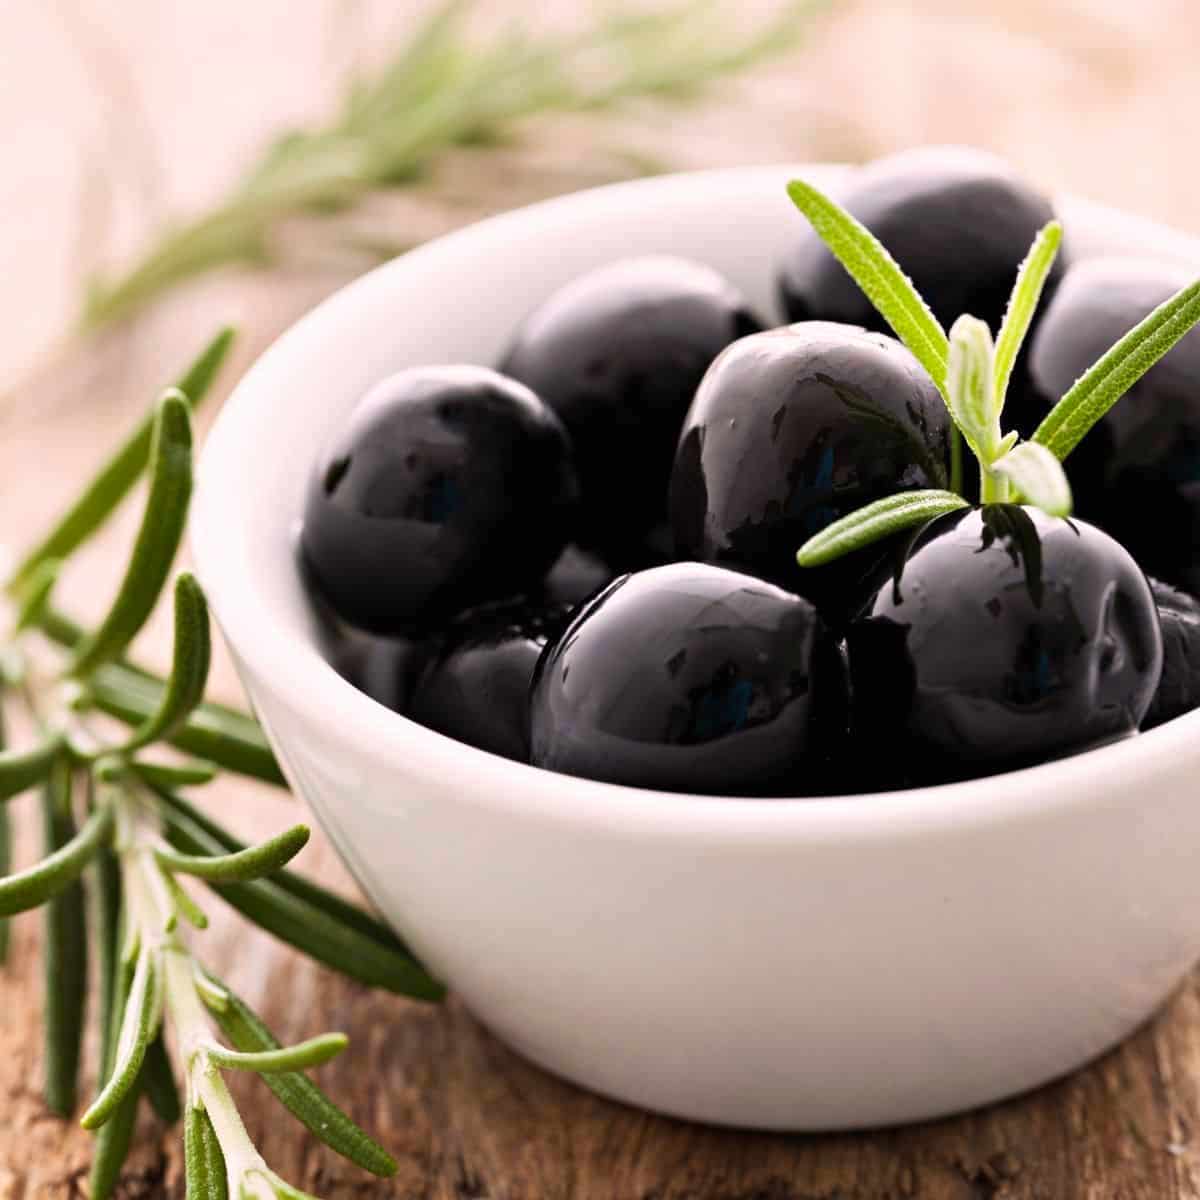 Olives - Black Olives